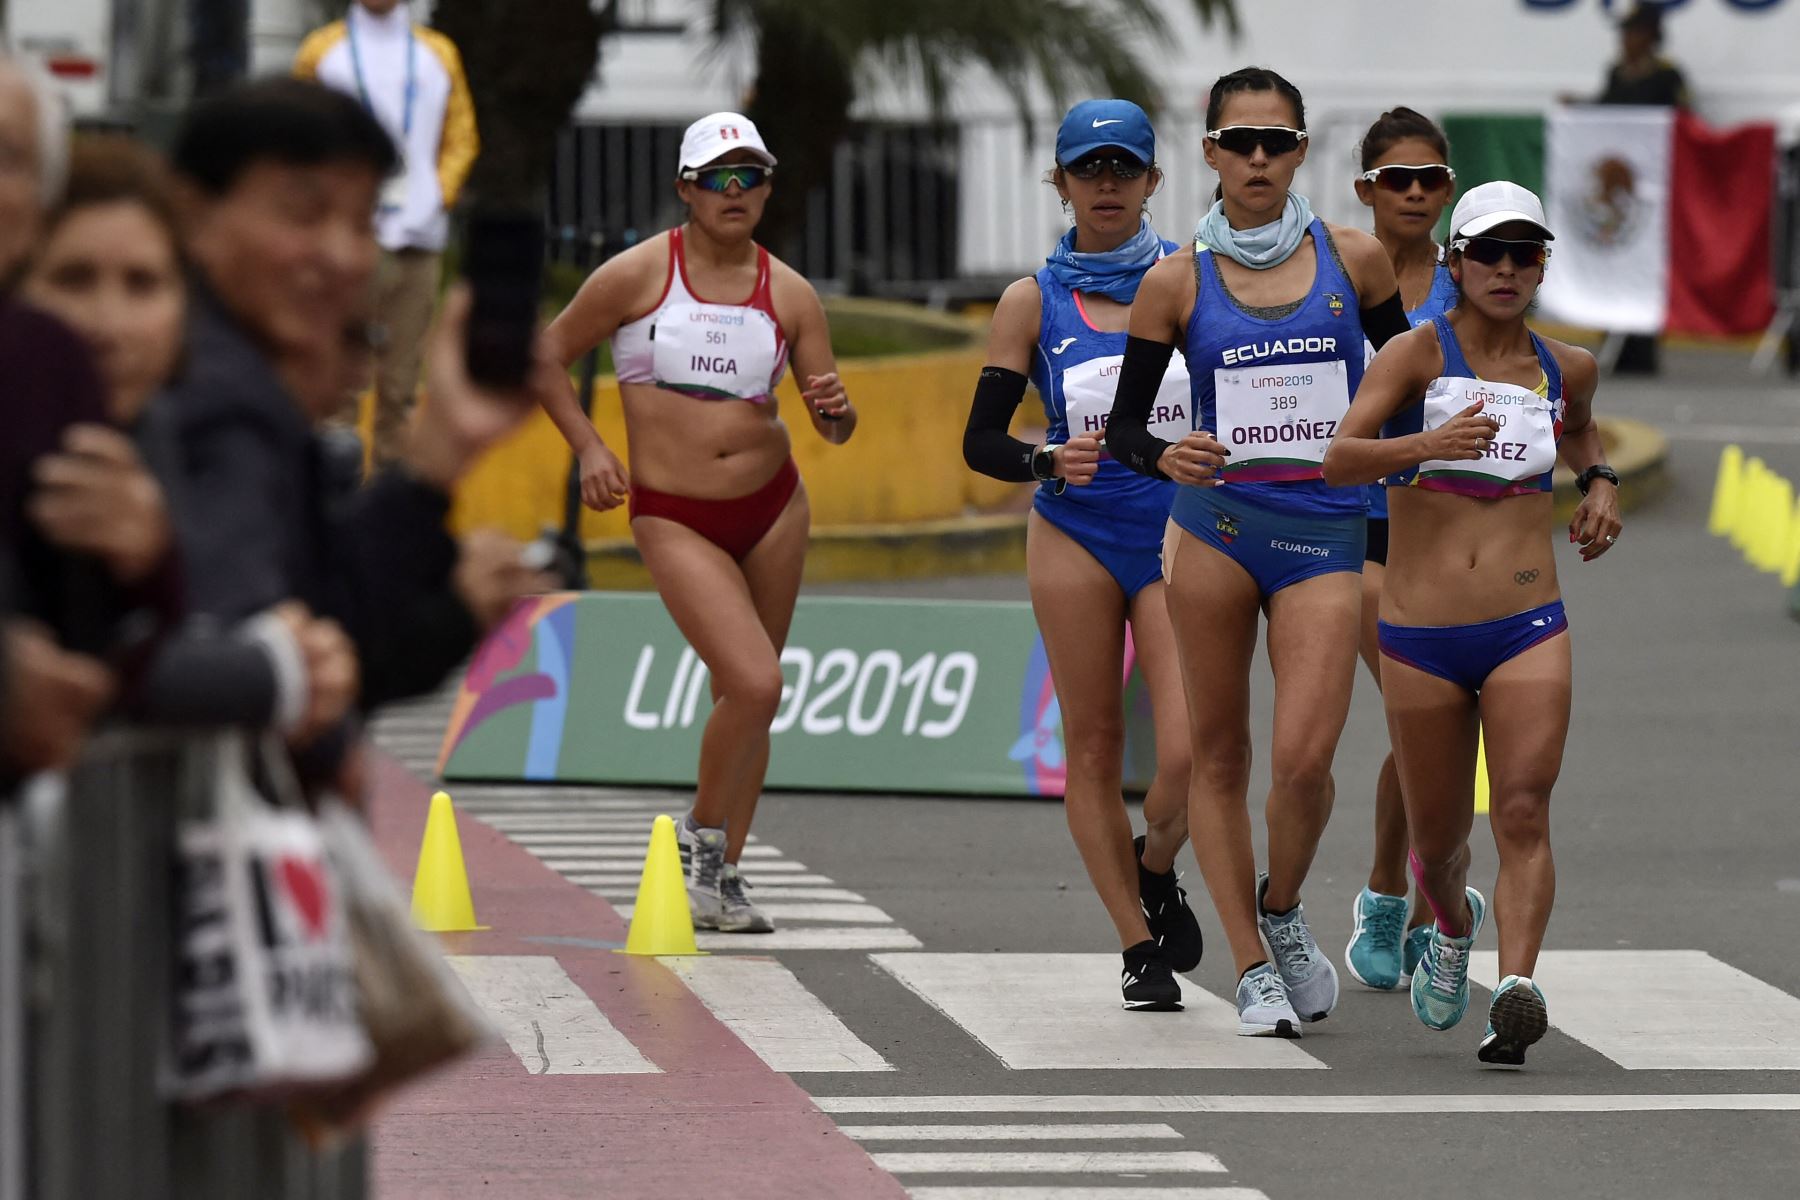 La peruana Evelyn Inga compite en la final de la marcha de 50k de mujeres durante los Juegos Panamericanos Lima 2019 en Lima.
Foto: AFP